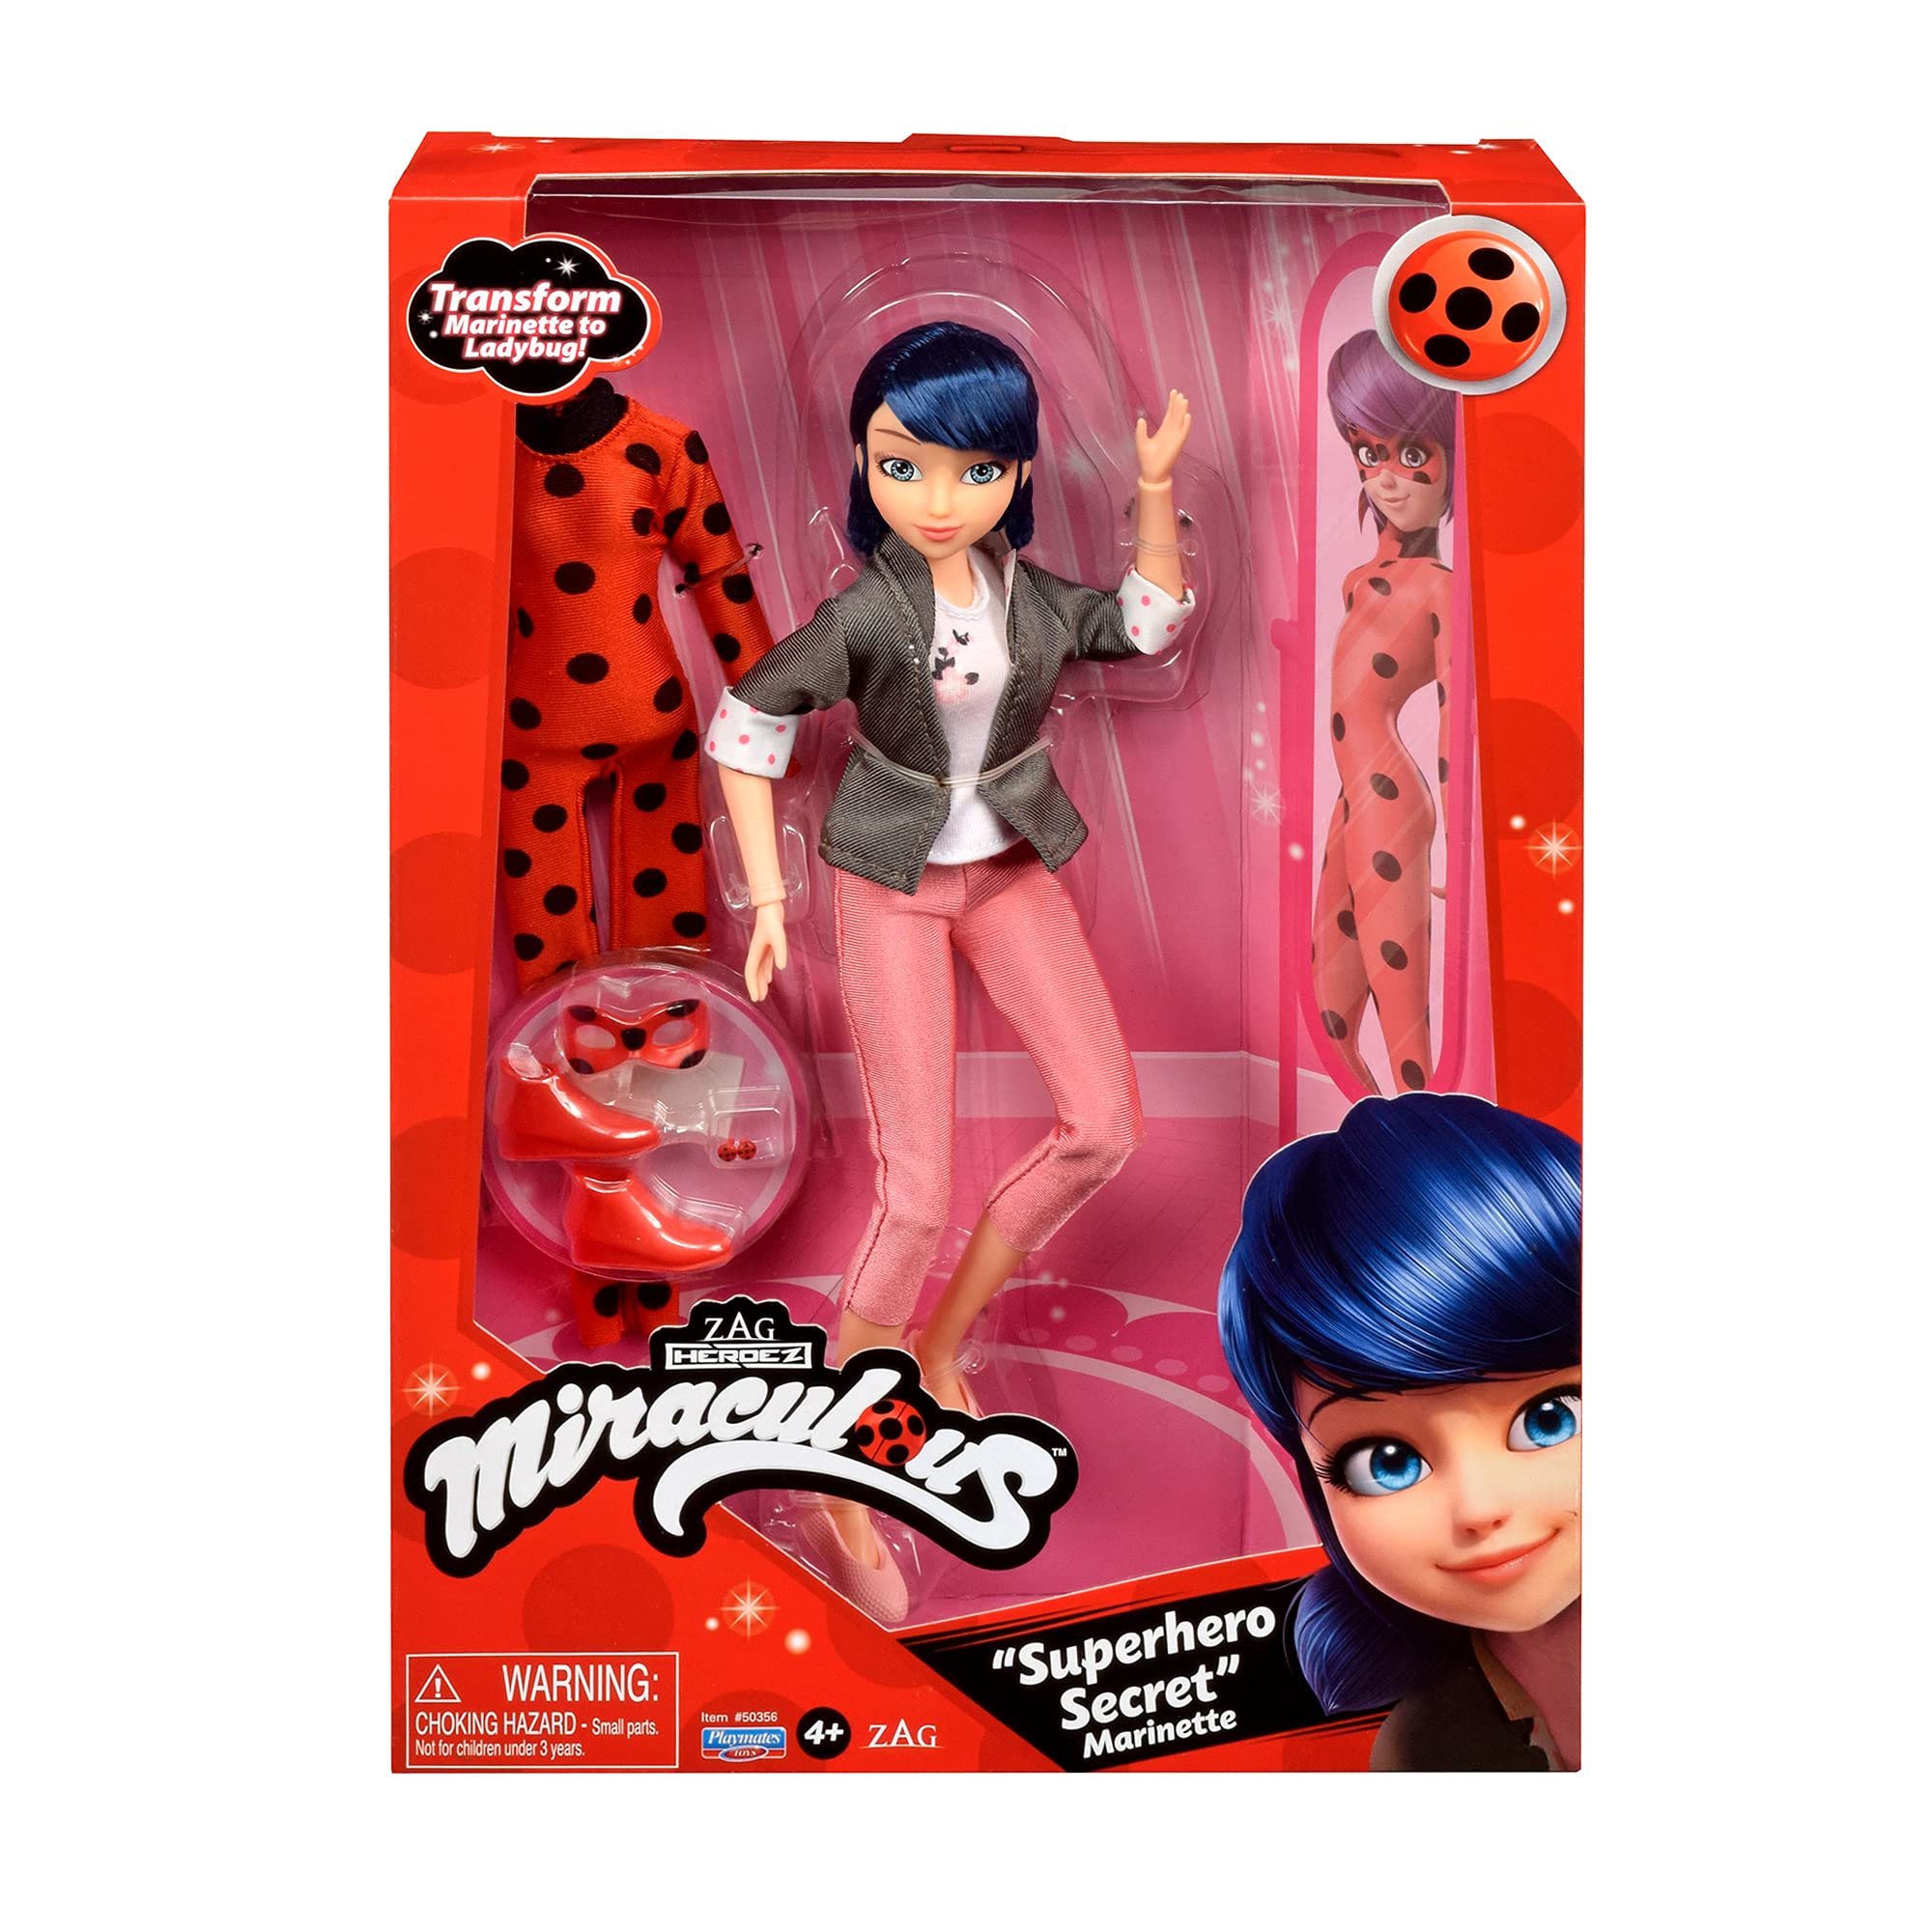 Miraculous Cat Ladybug Superhero Secret Marinette with Ladybug Fashion Outfit by Playmates Toys